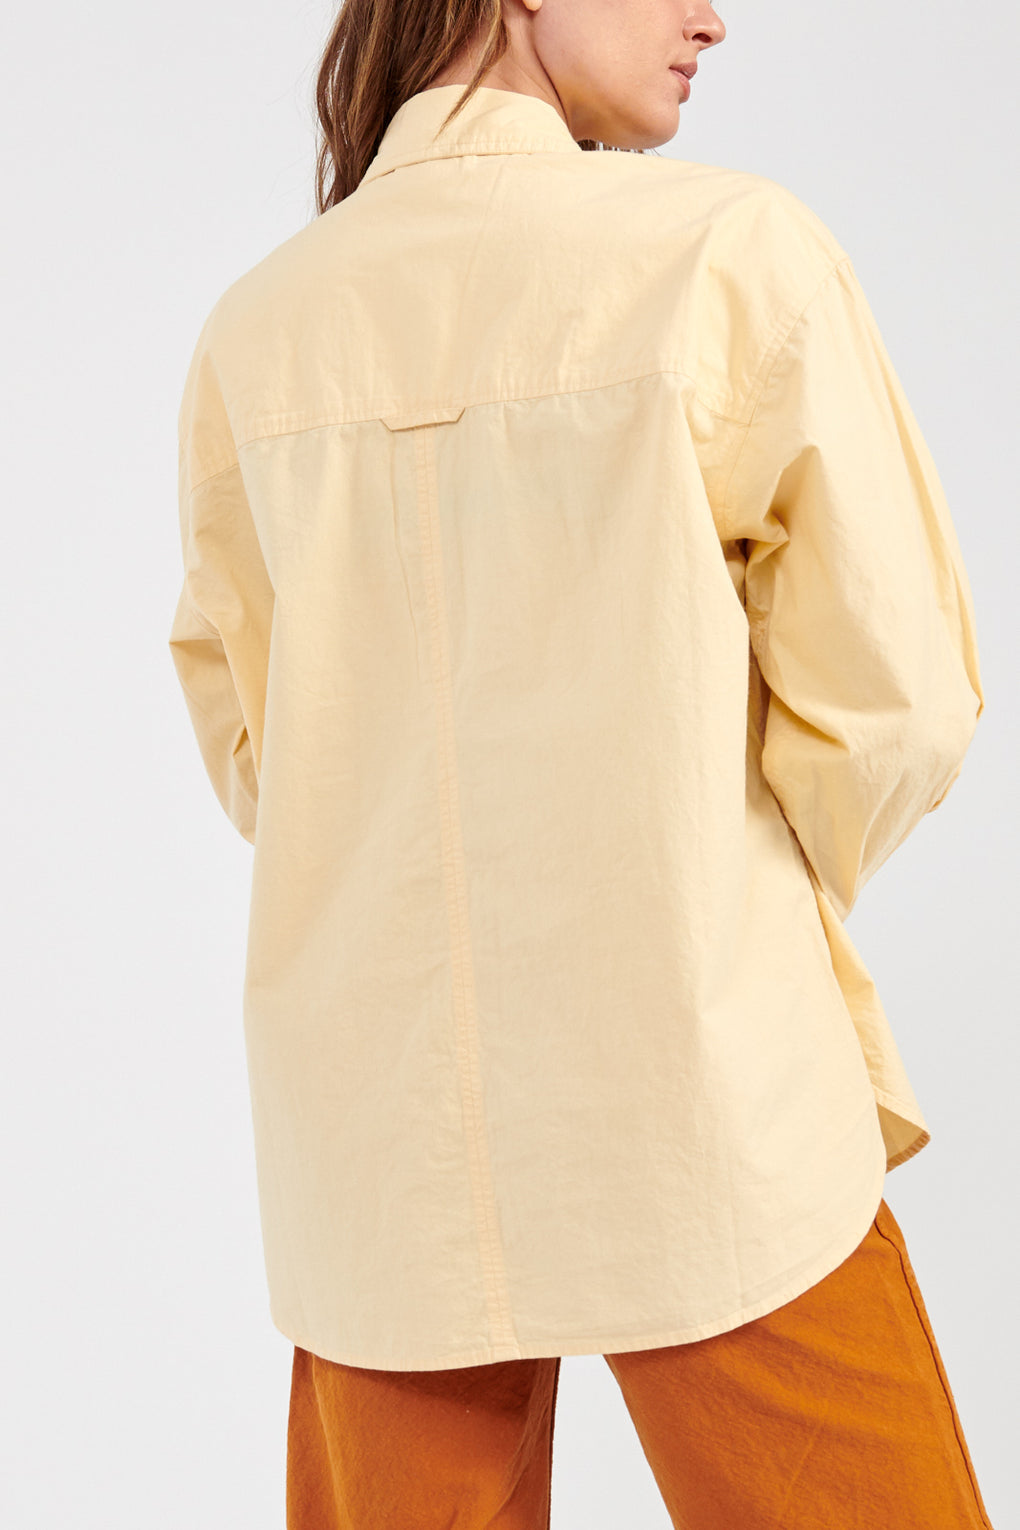 Apiece Apart Oversized Button Up Sunny-Apiece Apart yellow button up shirt-Idun-St. Paul